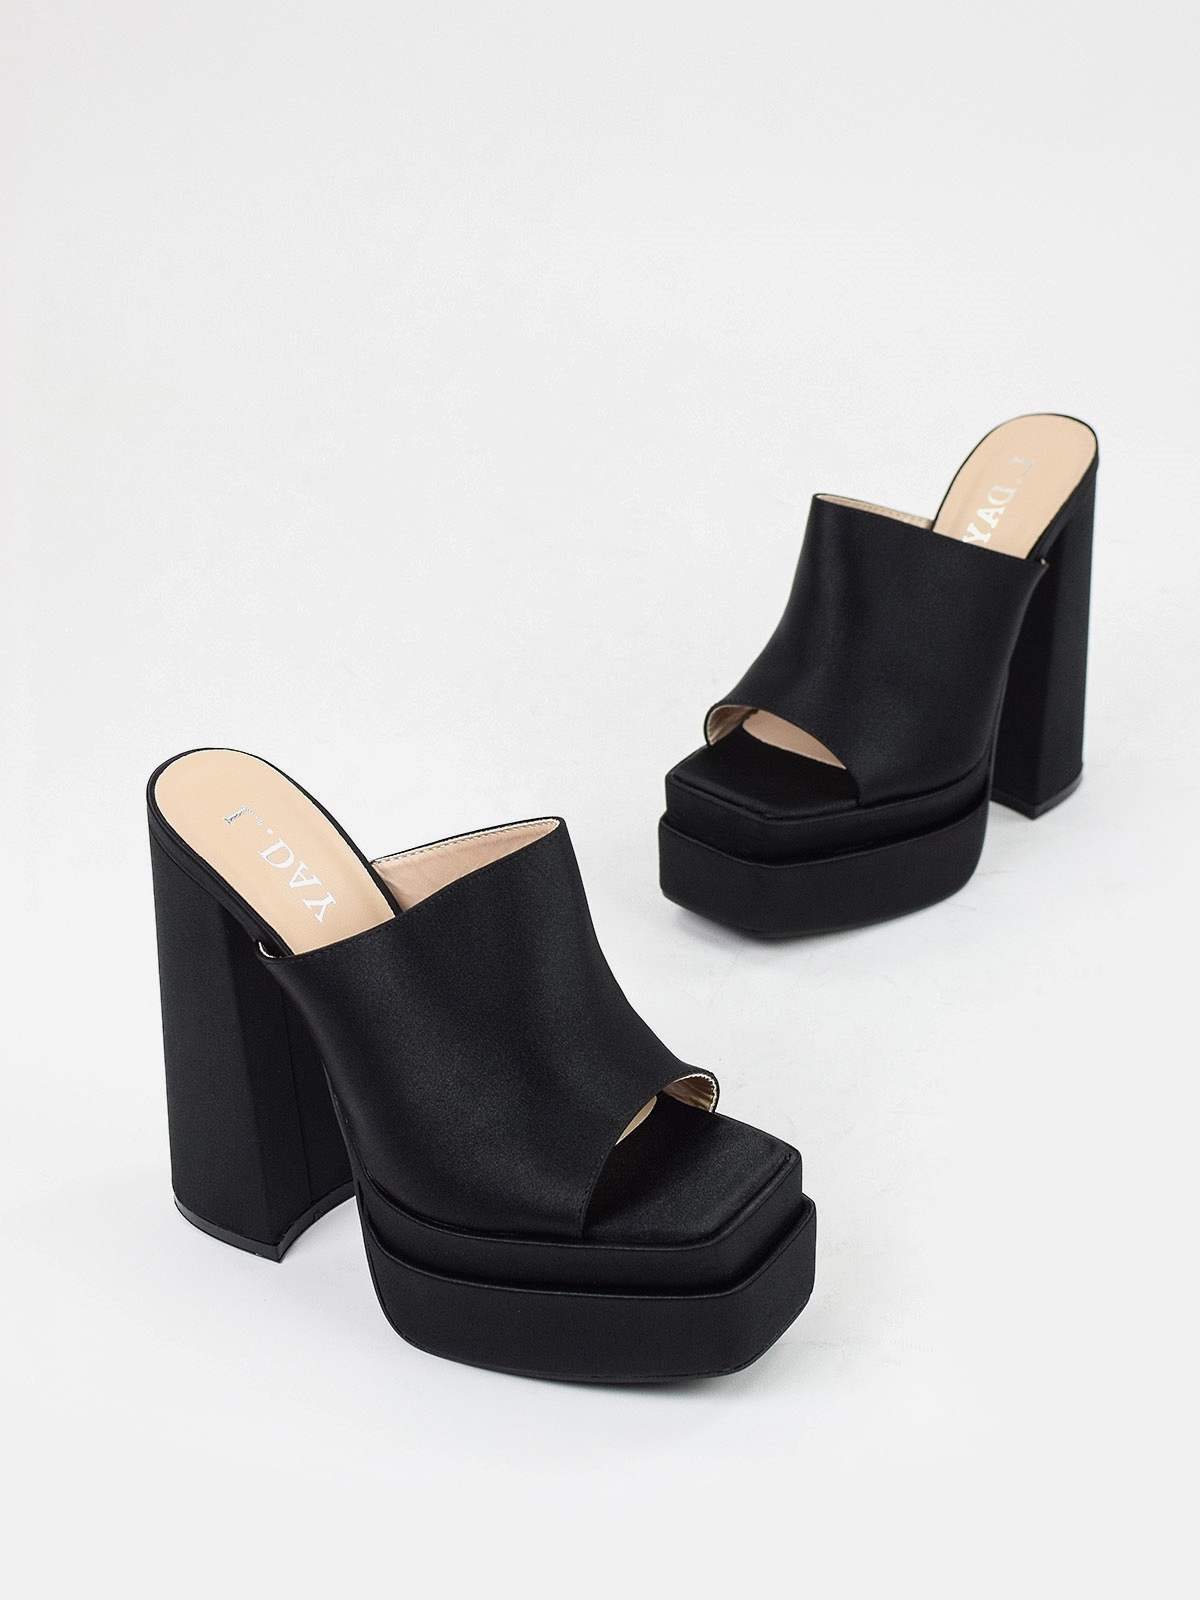 High heeled platform sandals in black